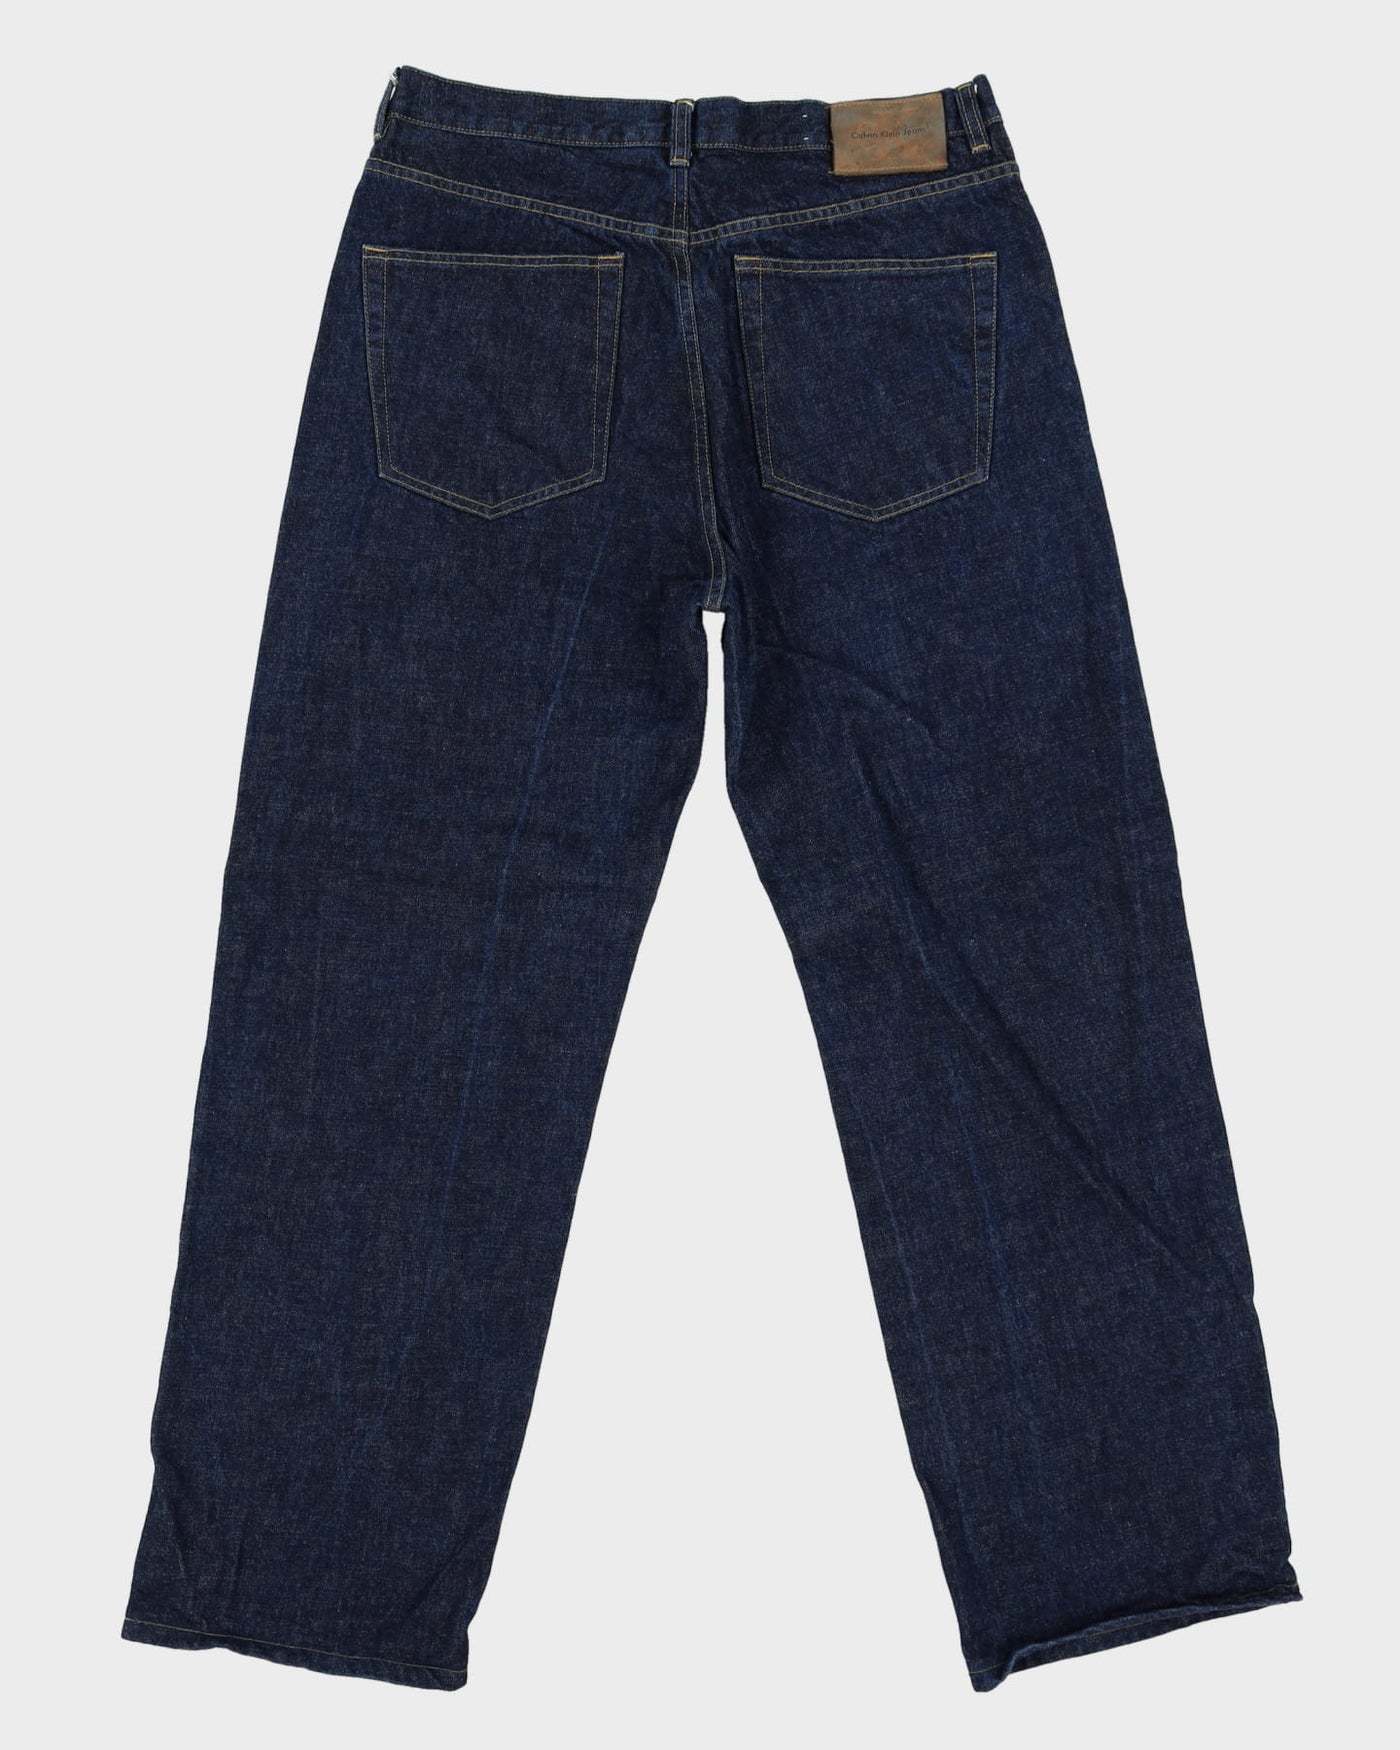 90s Calvin Klein Dark Wash Blue Jeans - W33 L30